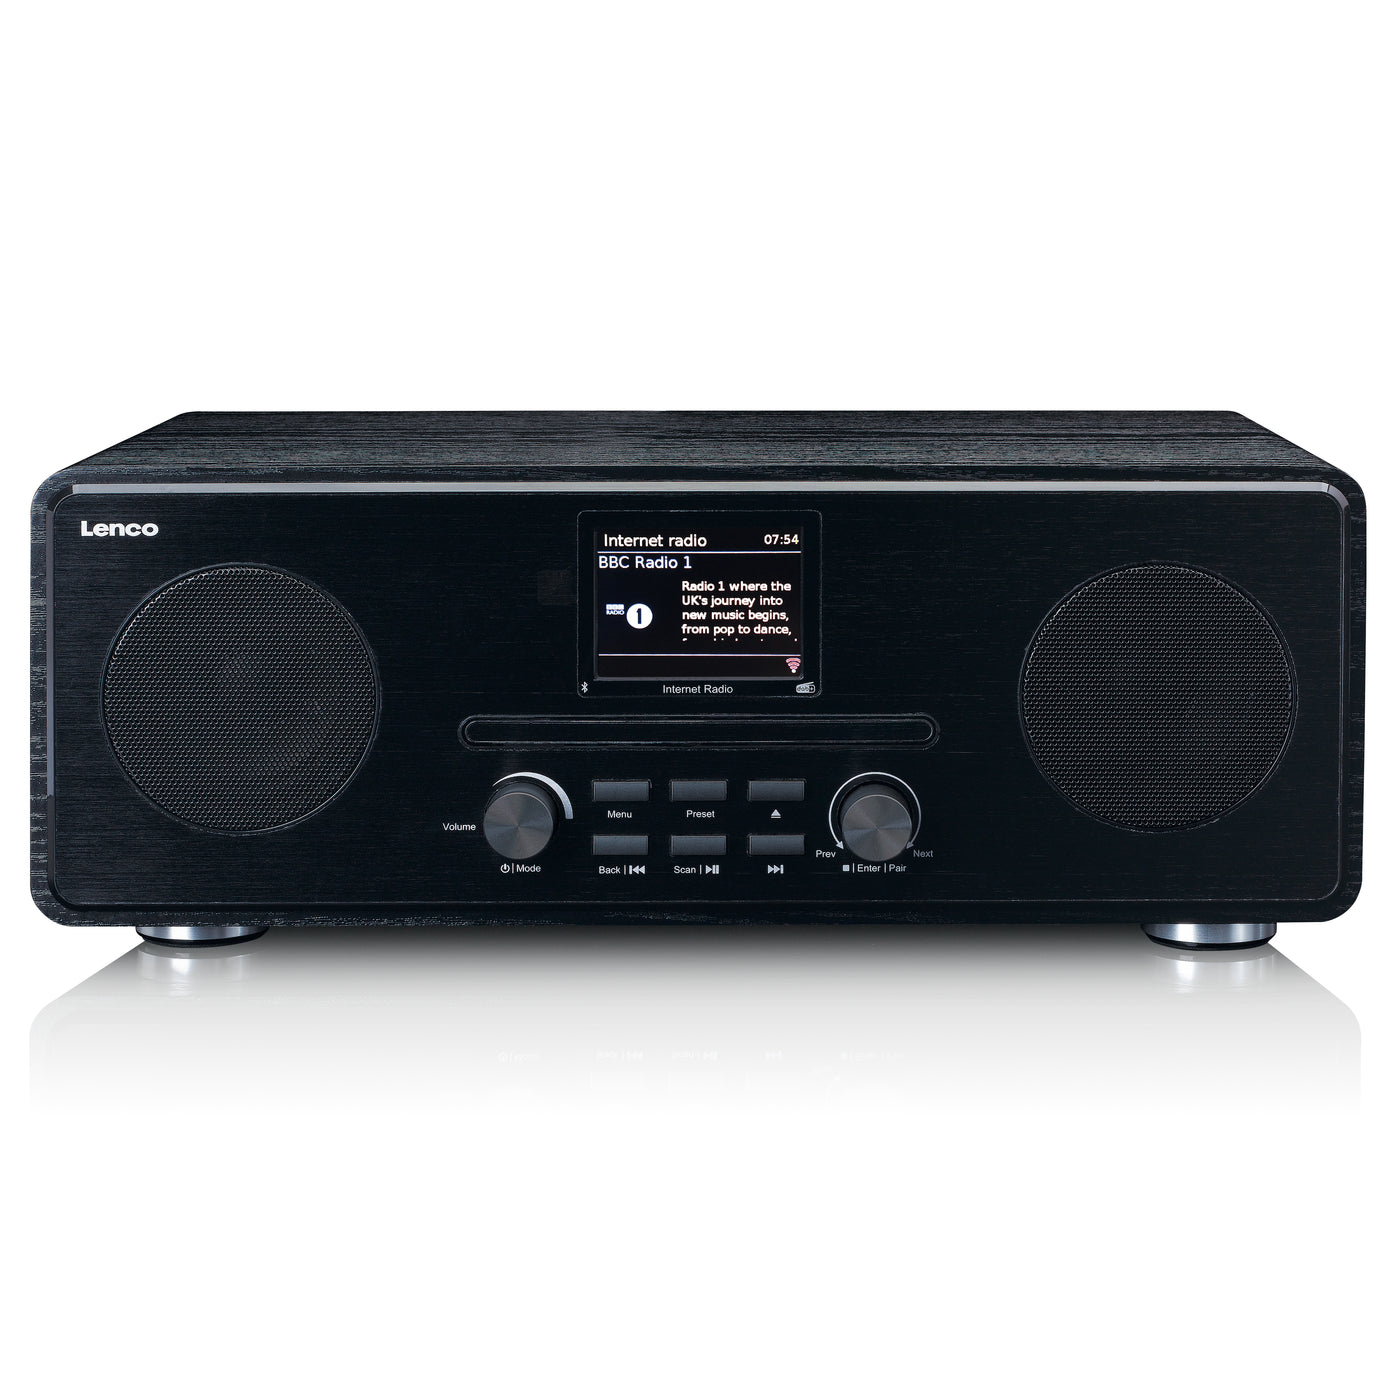 LENCO DIR-260BK - Radio internetowe / DAB + FM z odtwarzaczem CD i Bluetooth®, czarne